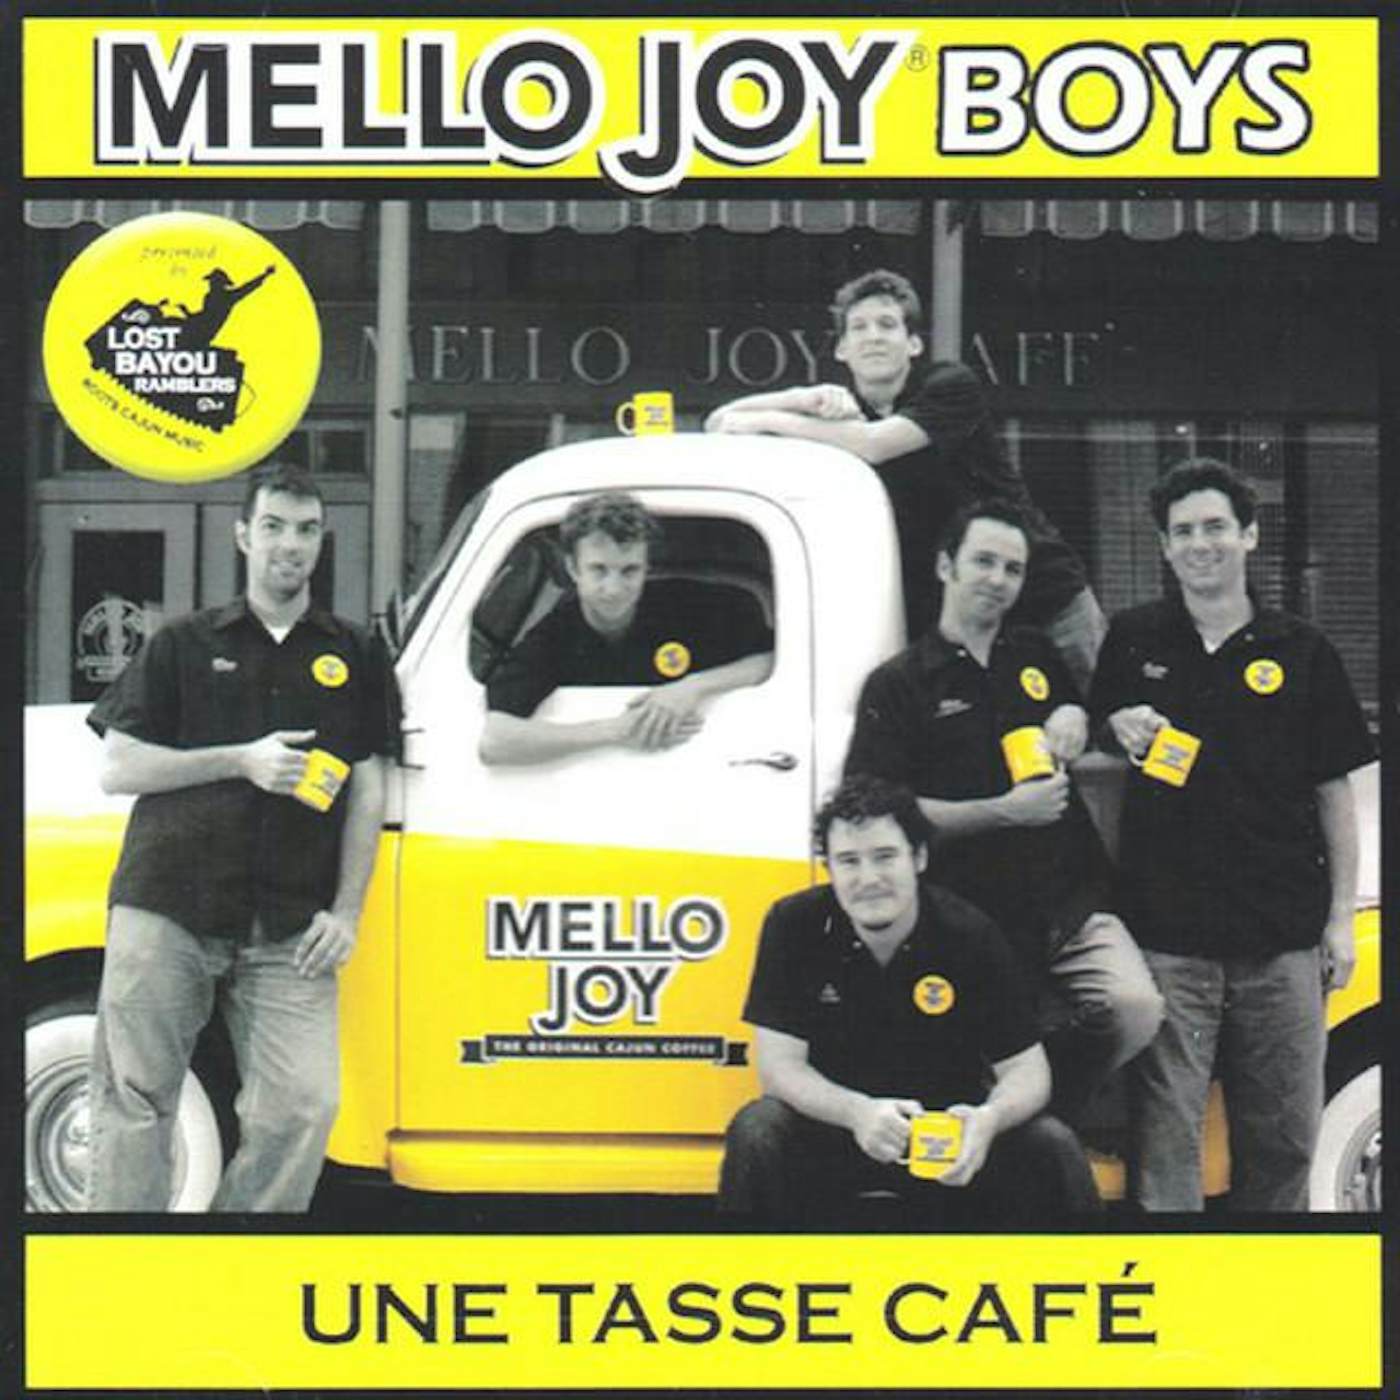 Mello Joy Boys